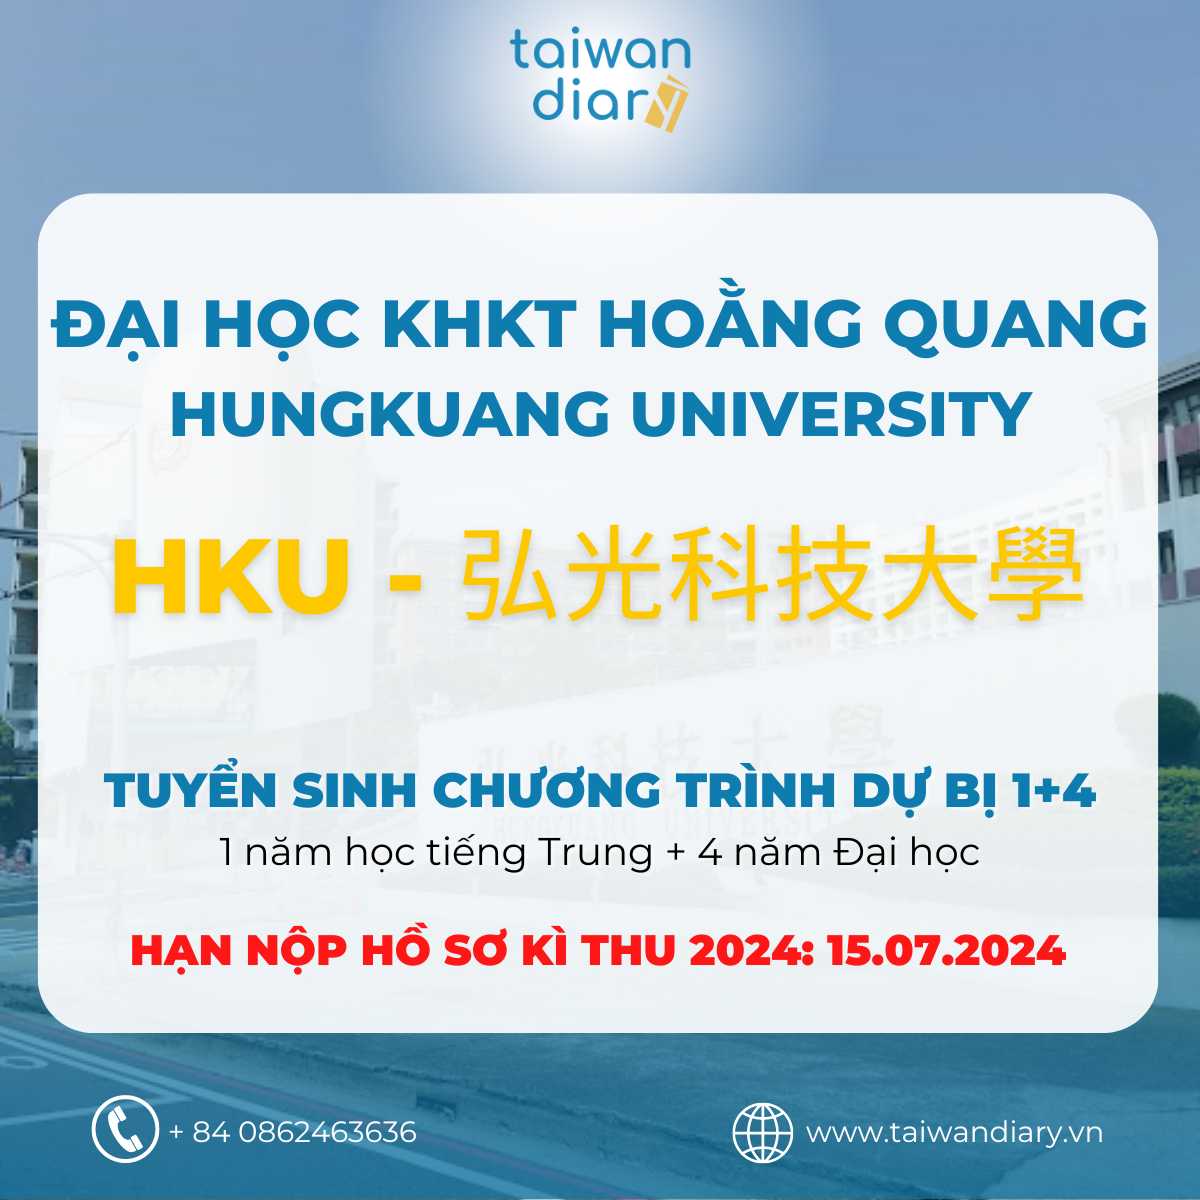 Giới thiệu hệ 1+4 Đại học KHKT Hoằng Quang kỳ thu 2024